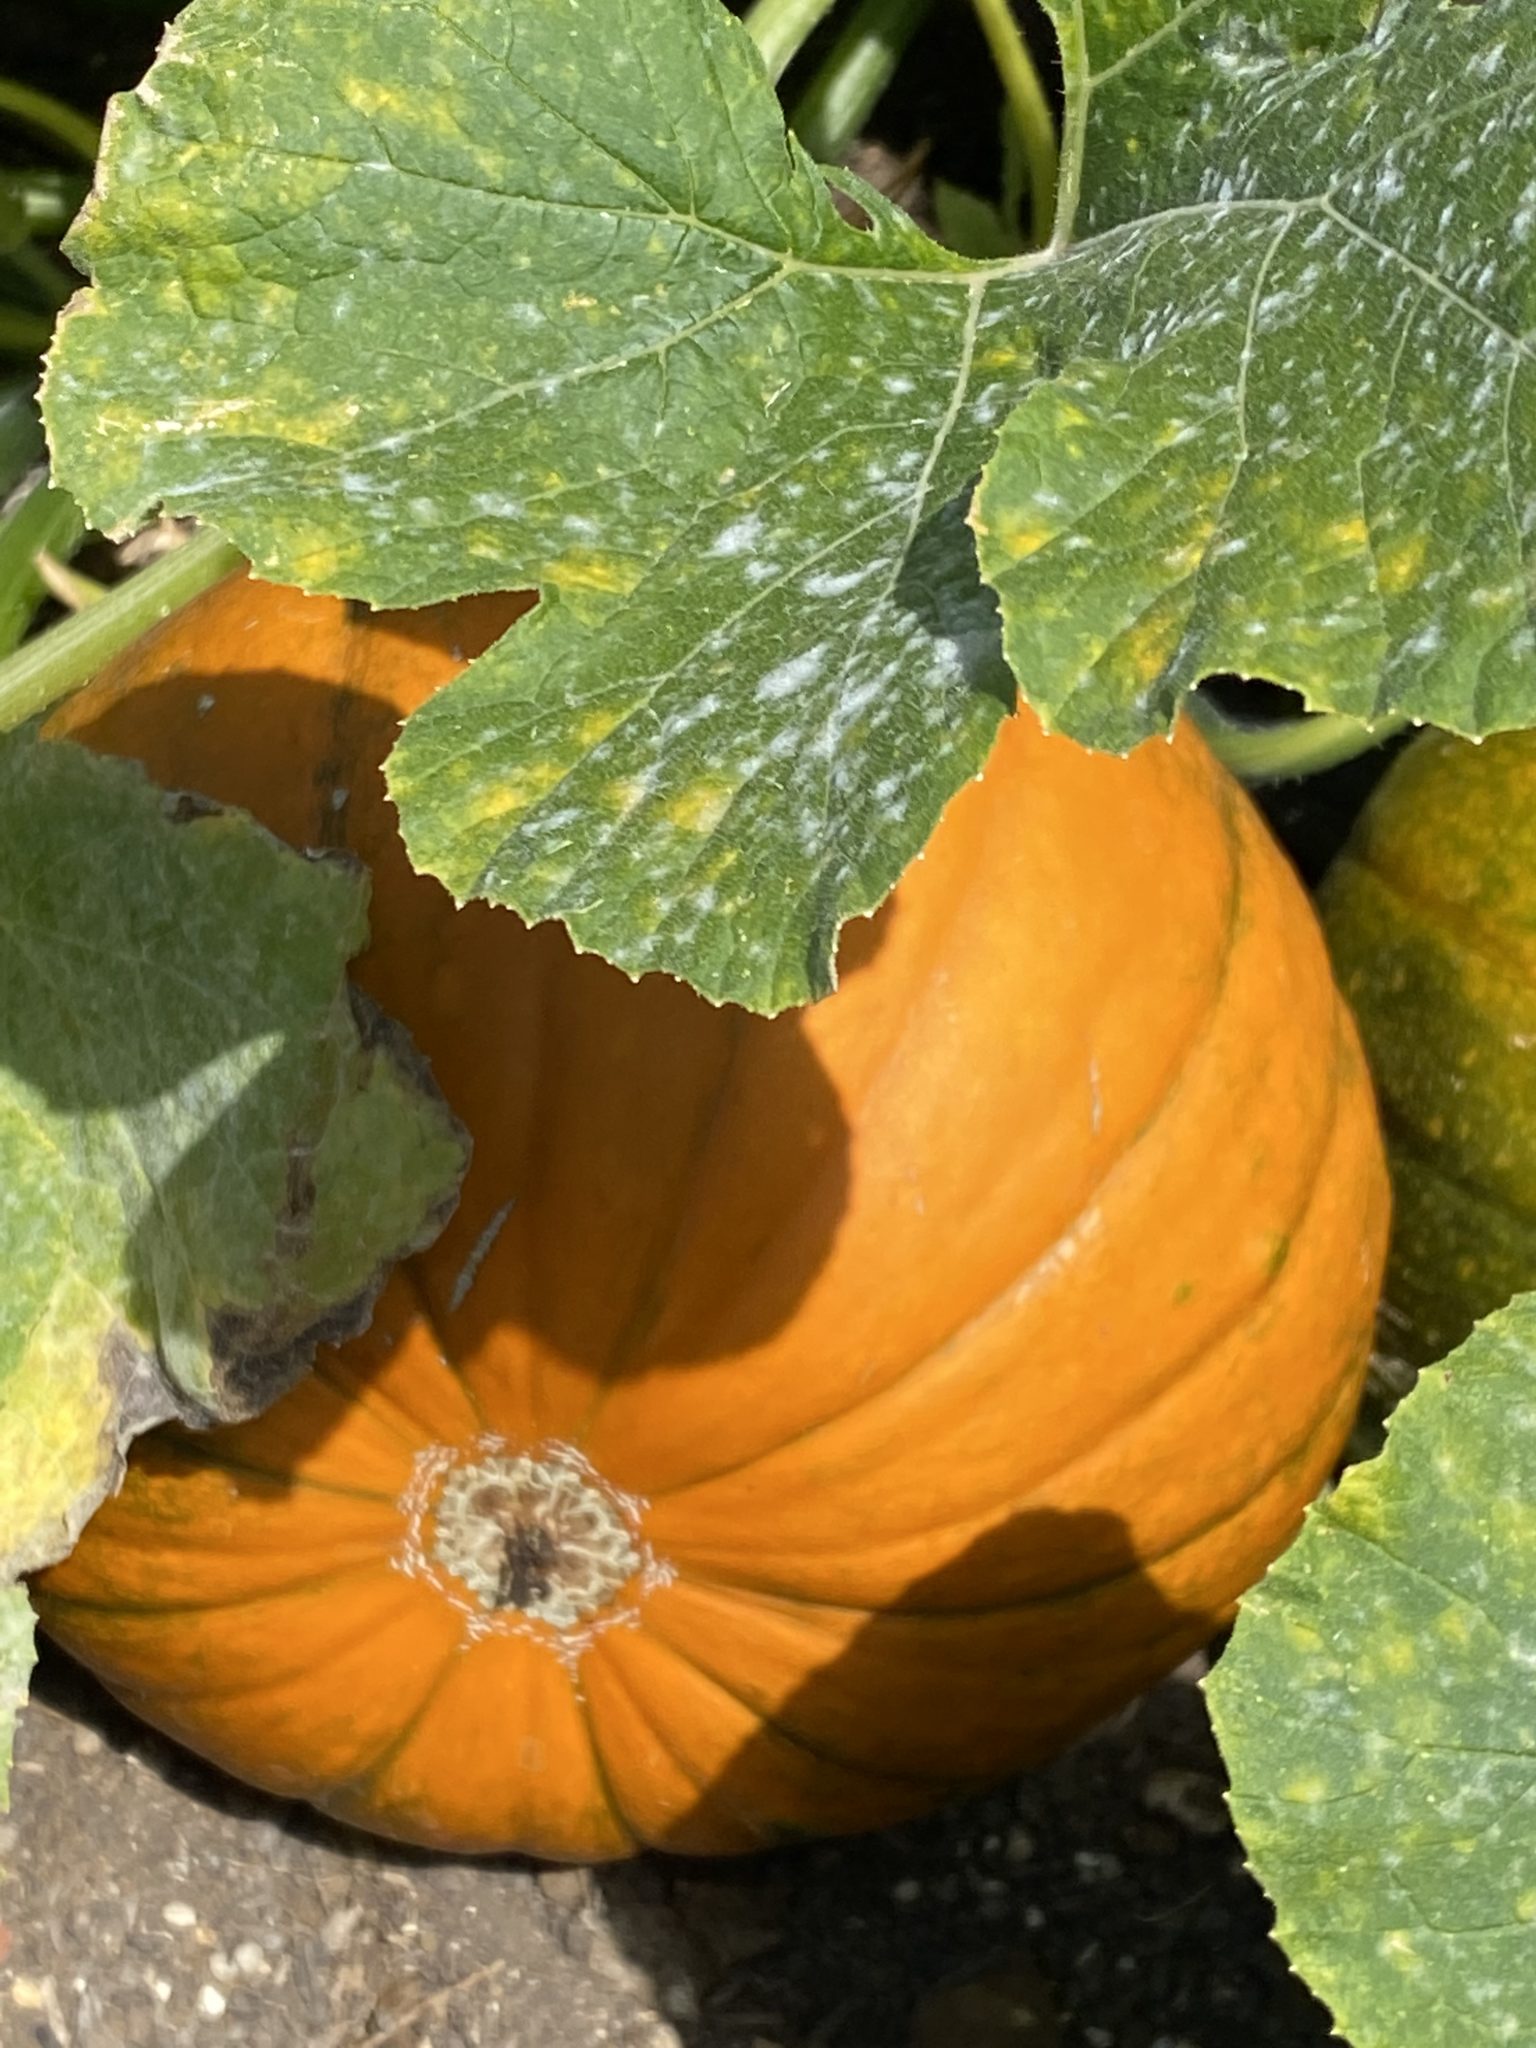 photo of a pumpkin growing